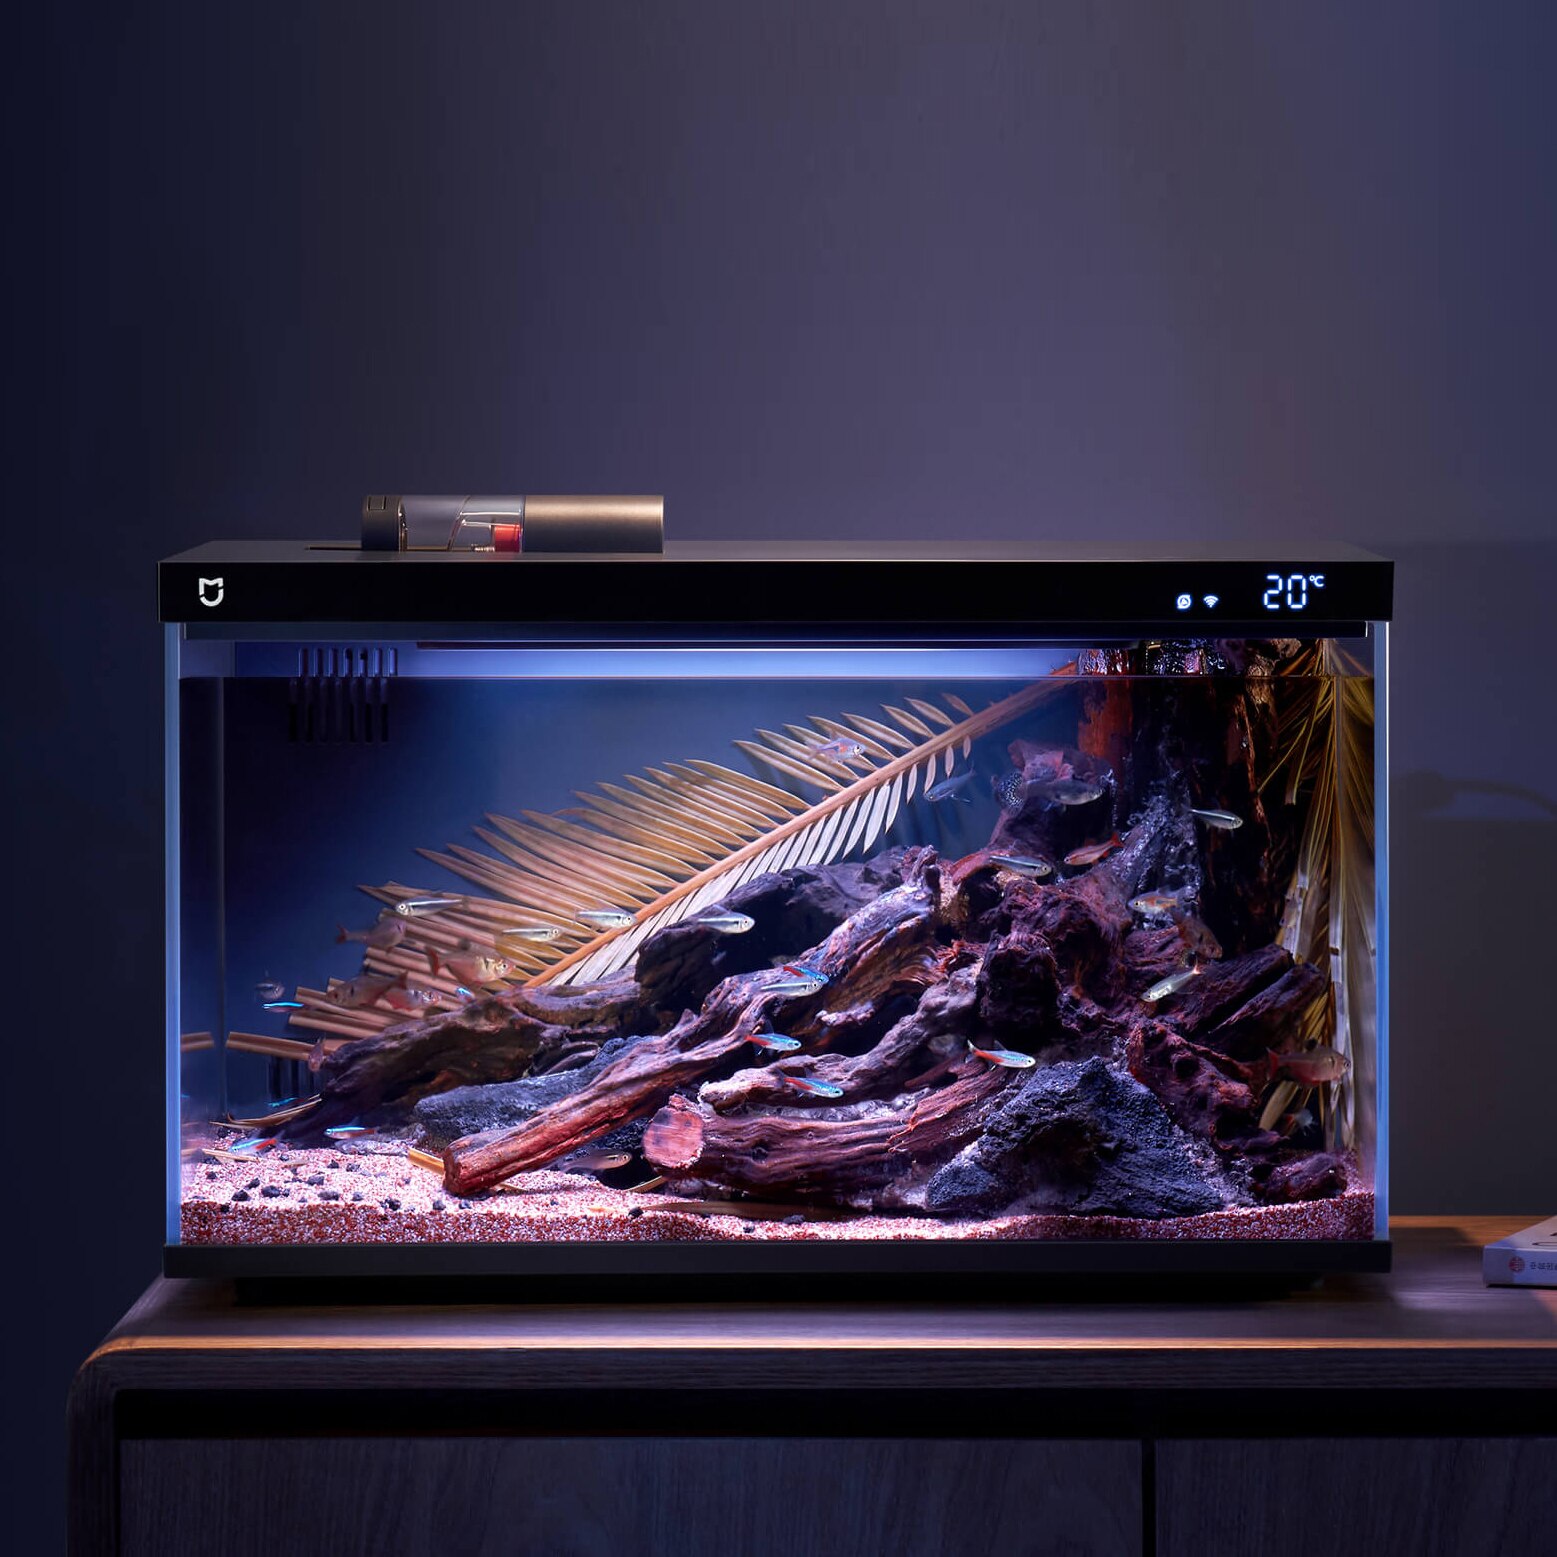 Xiaomi представила умный аквариум Mijia Smart Fish Tank. Он очень дешёвый, но поразительно уникальный